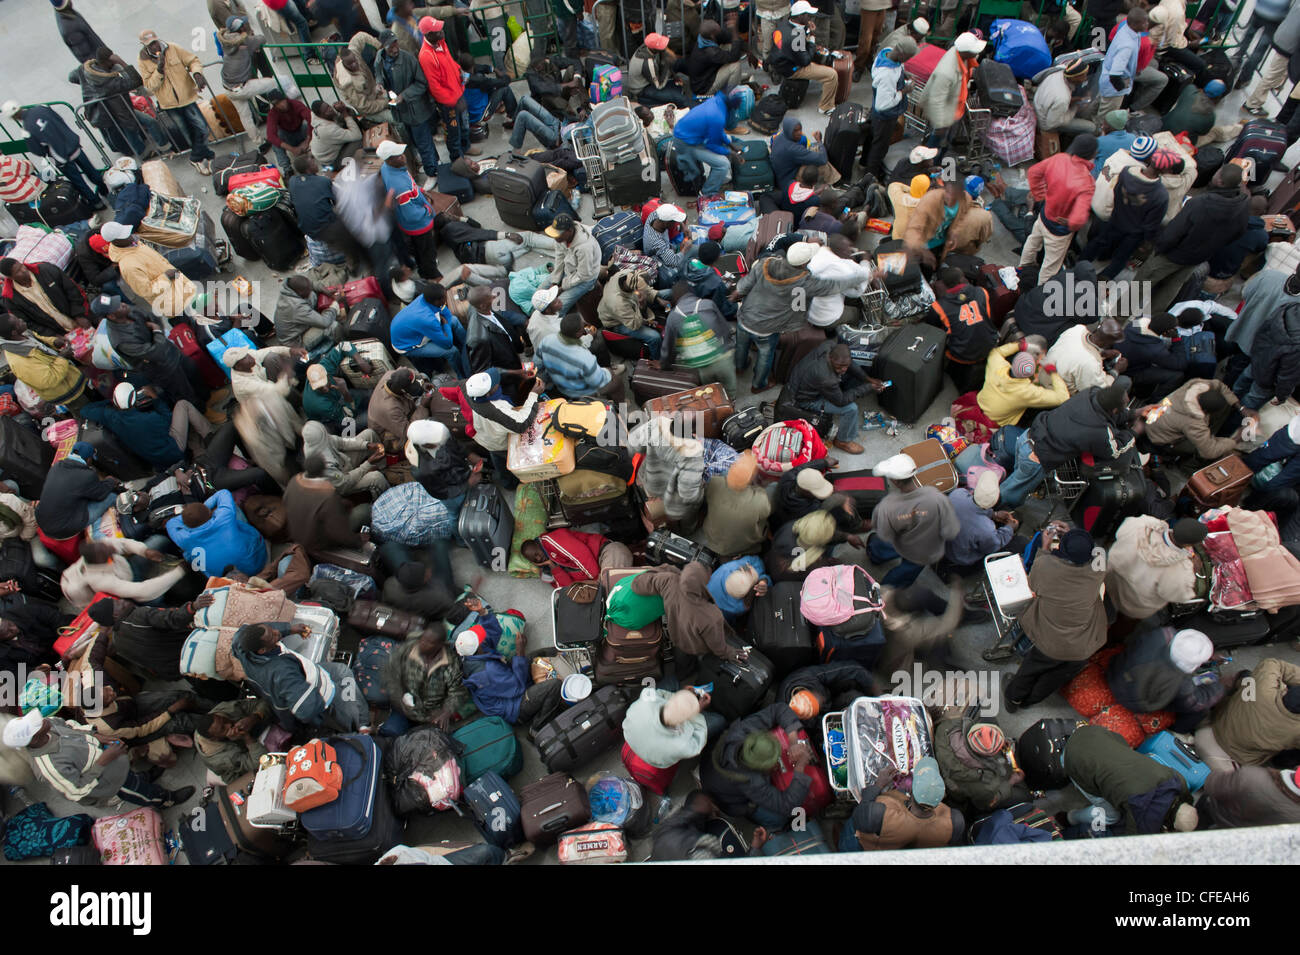 L'aéroport de Djerba. La Tunisie. Environ 15000 réfugiés évacués de Libye en attente d'avions pour les ramener chez eux. 2011 Banque D'Images